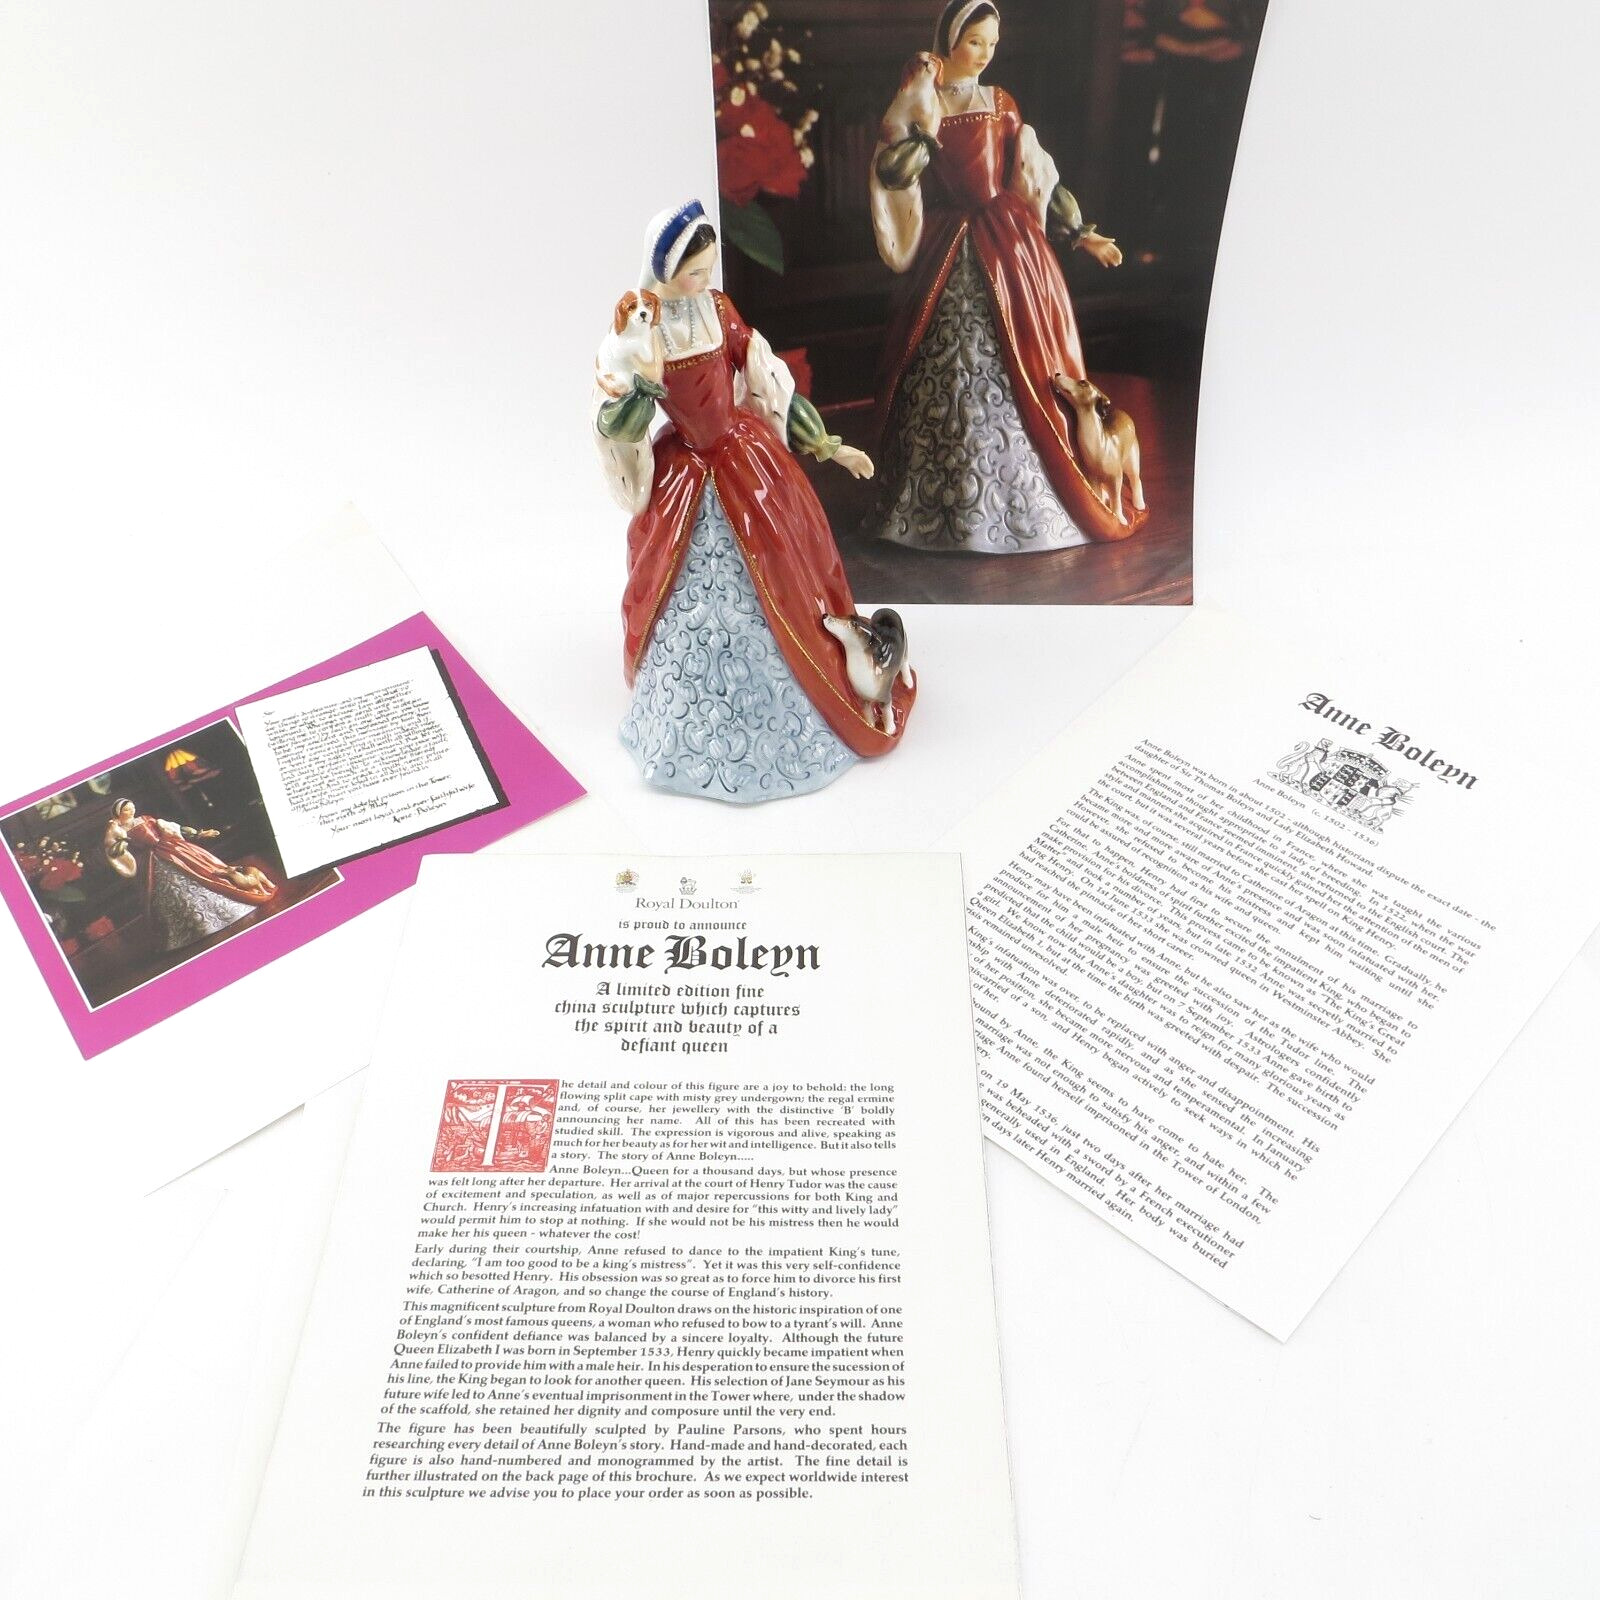 VTG Royal Doulton LTD Ed Figurine Anne Boleyn 1194/9500 HN 3232 King Henry VIII 